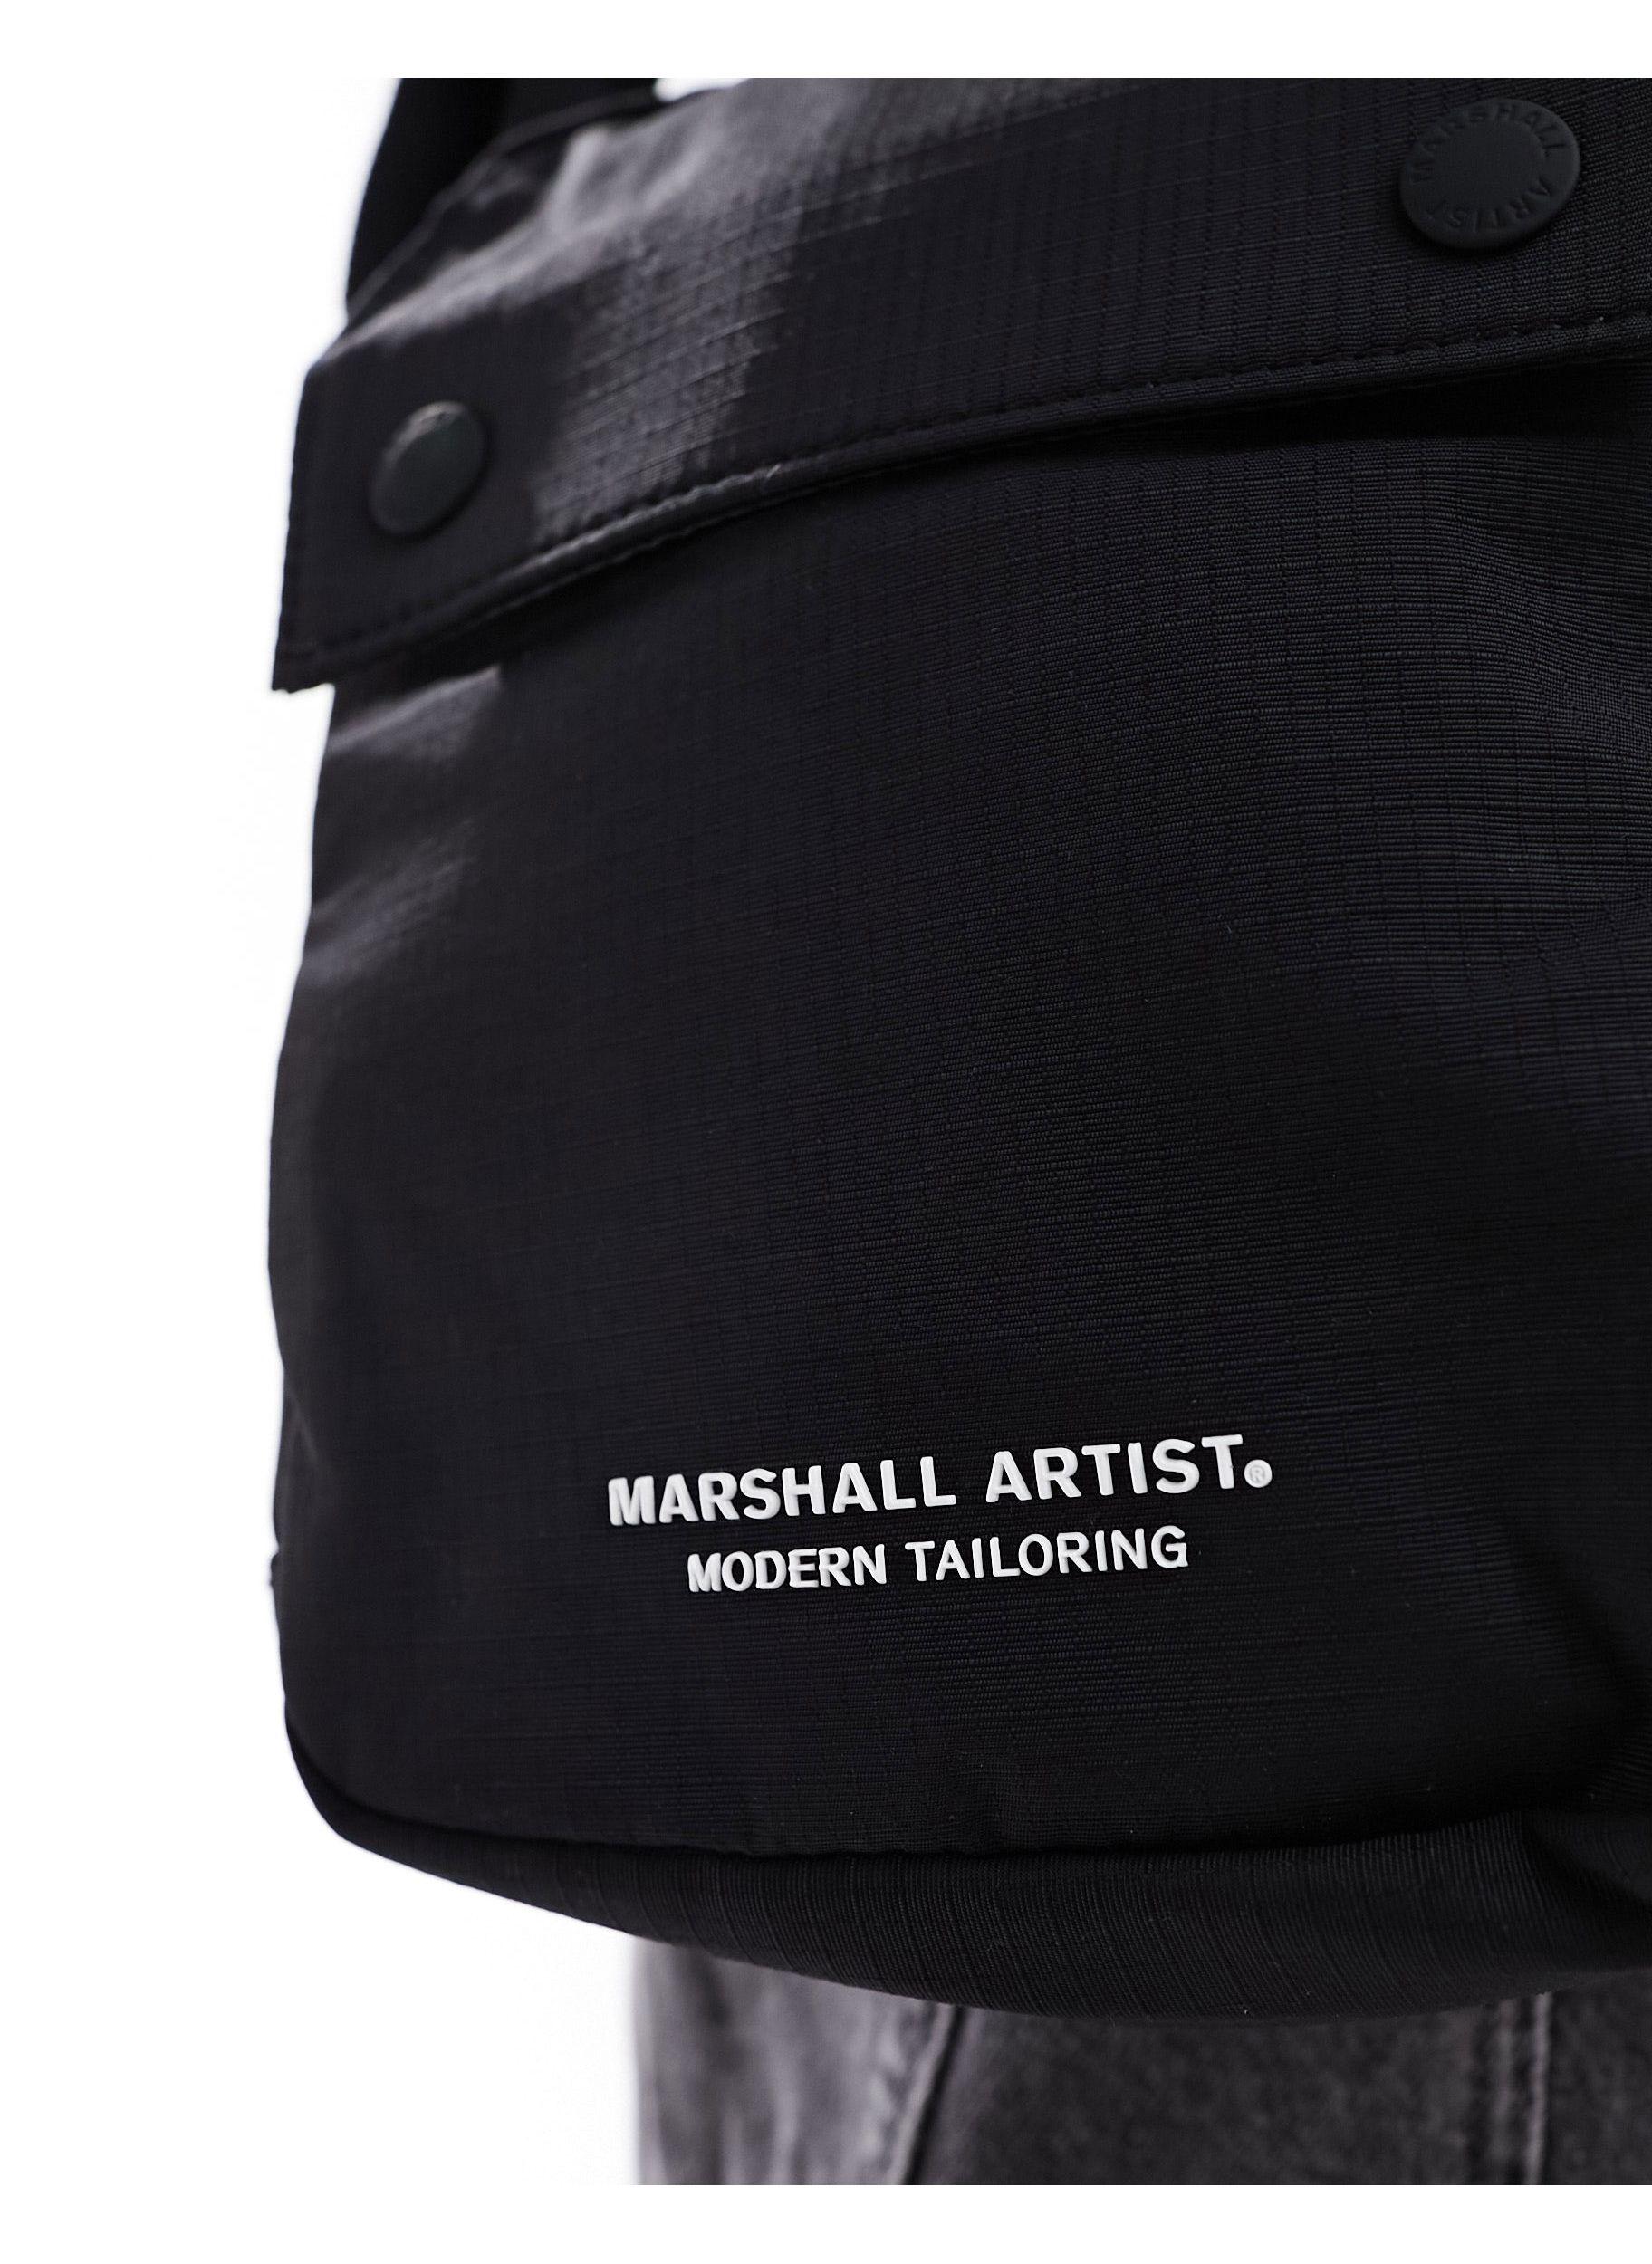 Marshall Artist injection logo flight bag in black